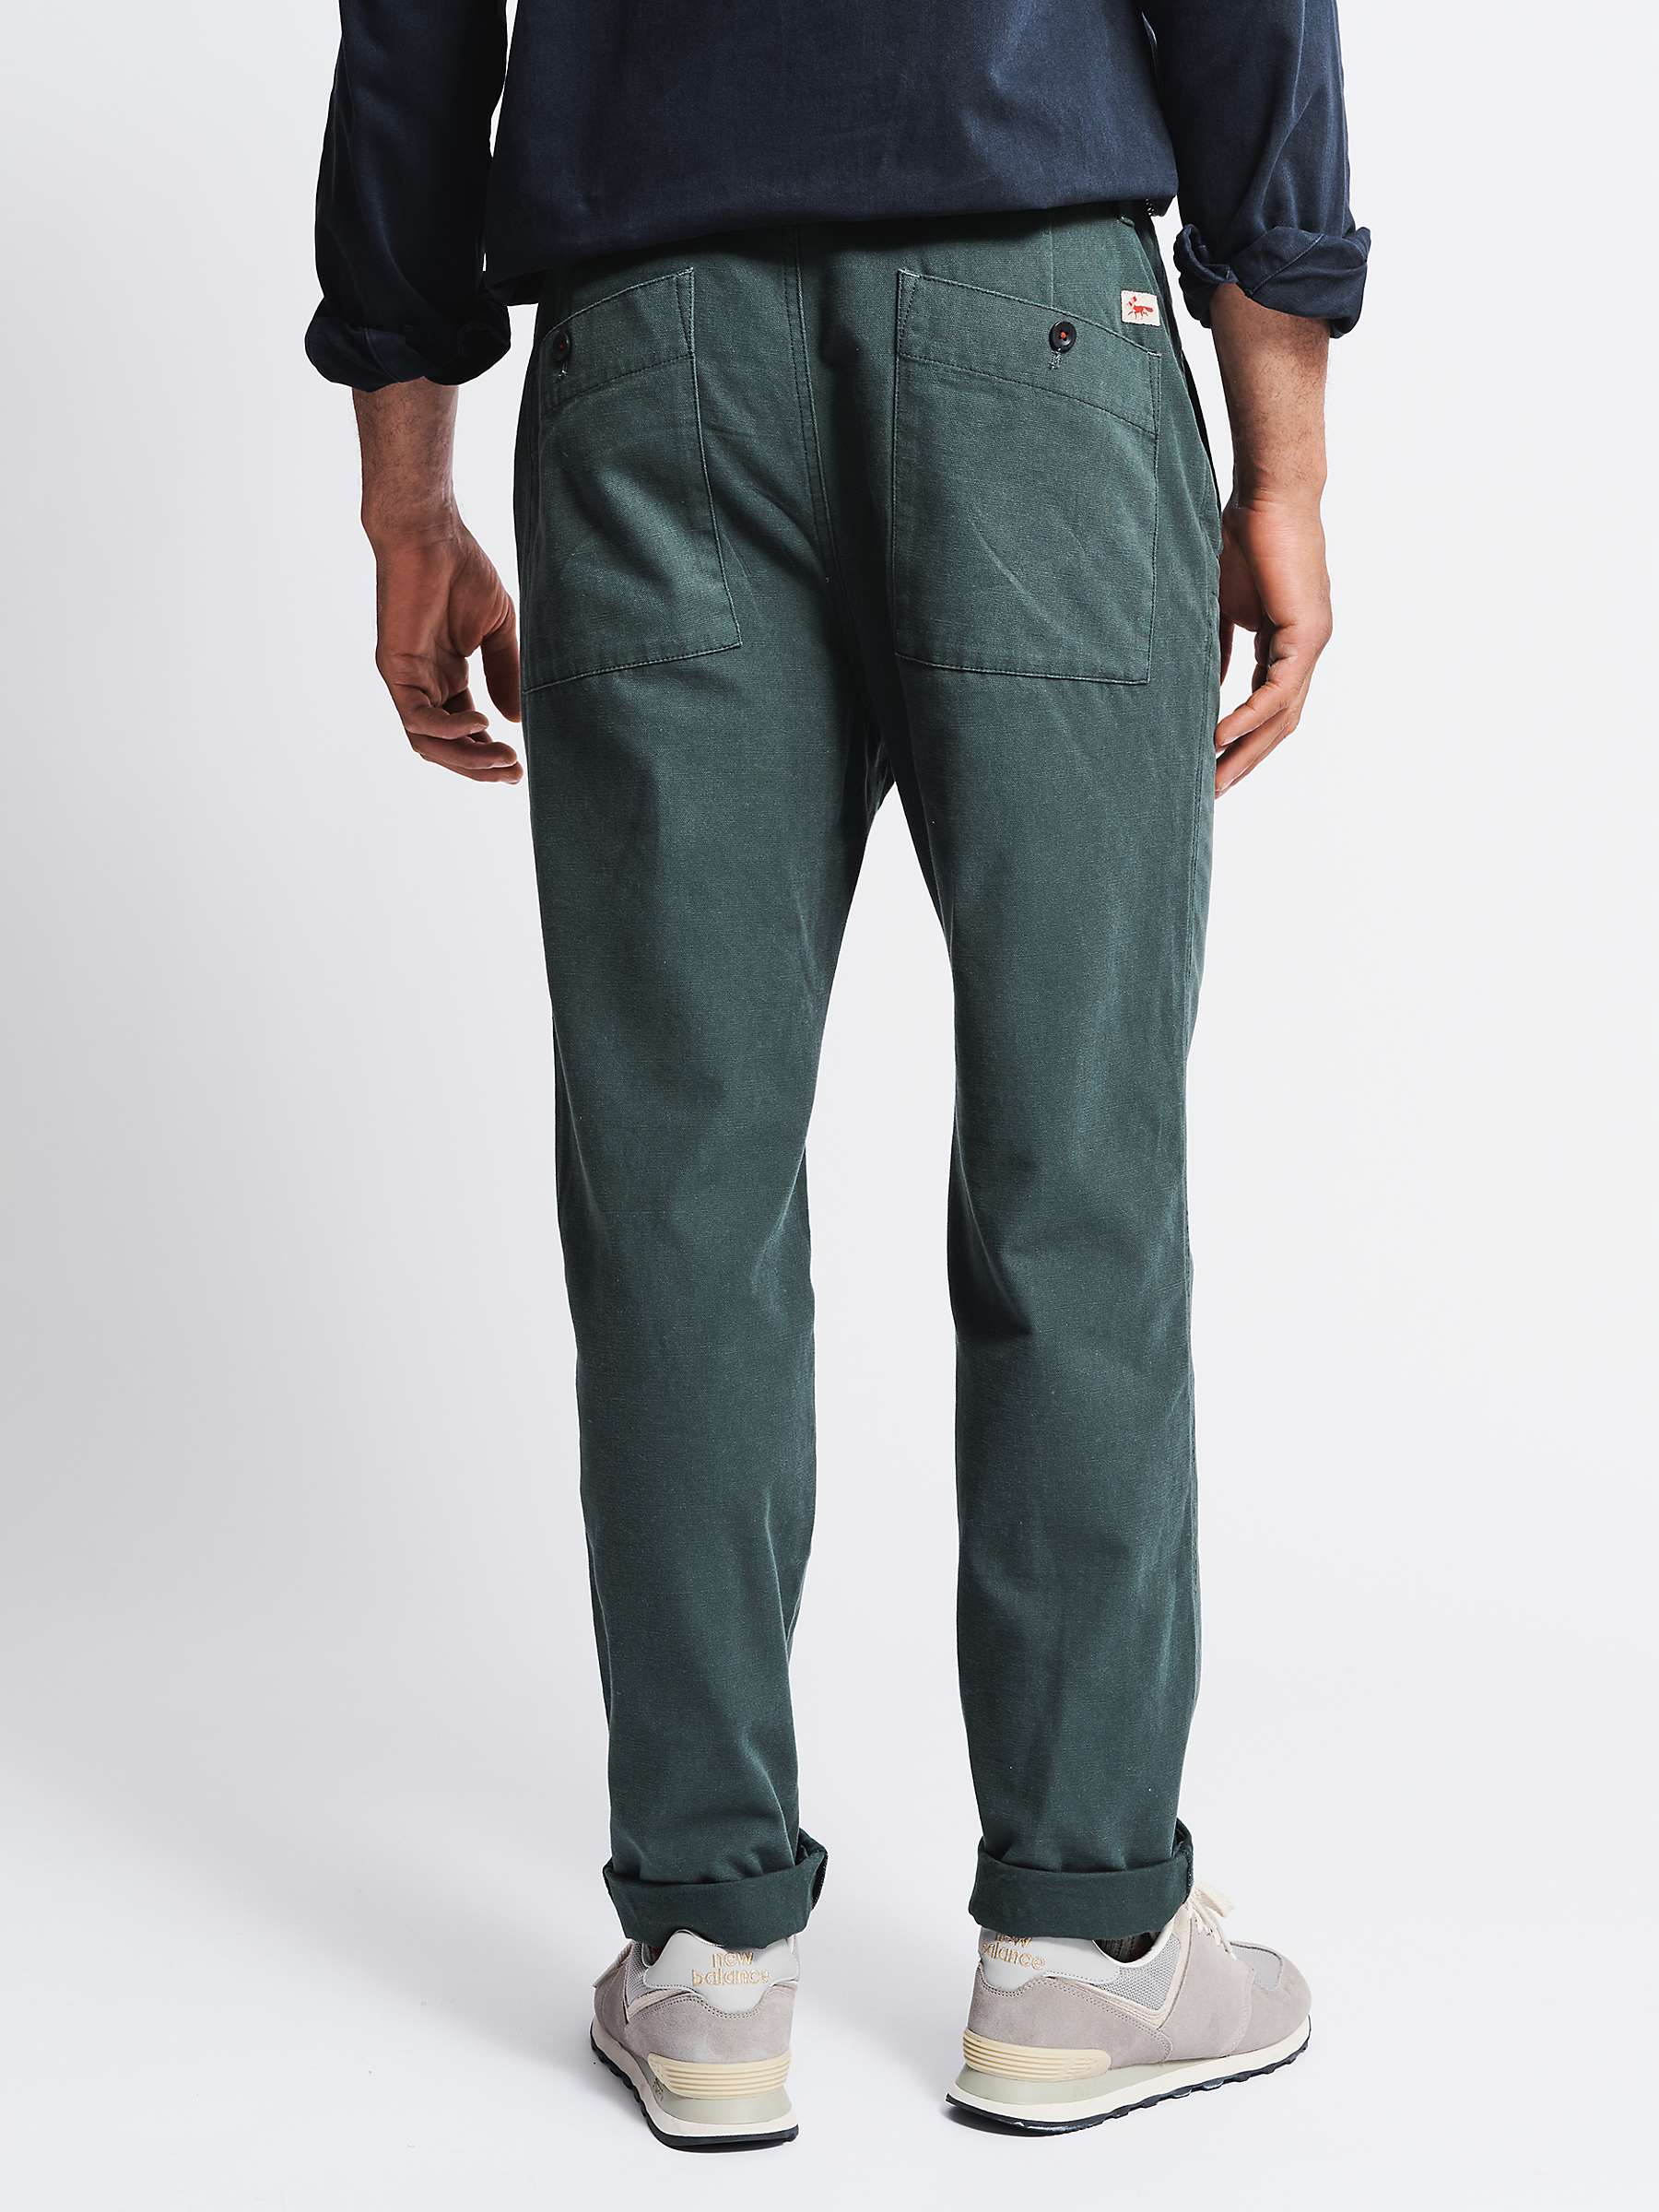 Buy Aubin Nettleton Trousers, Dark Green Online at johnlewis.com